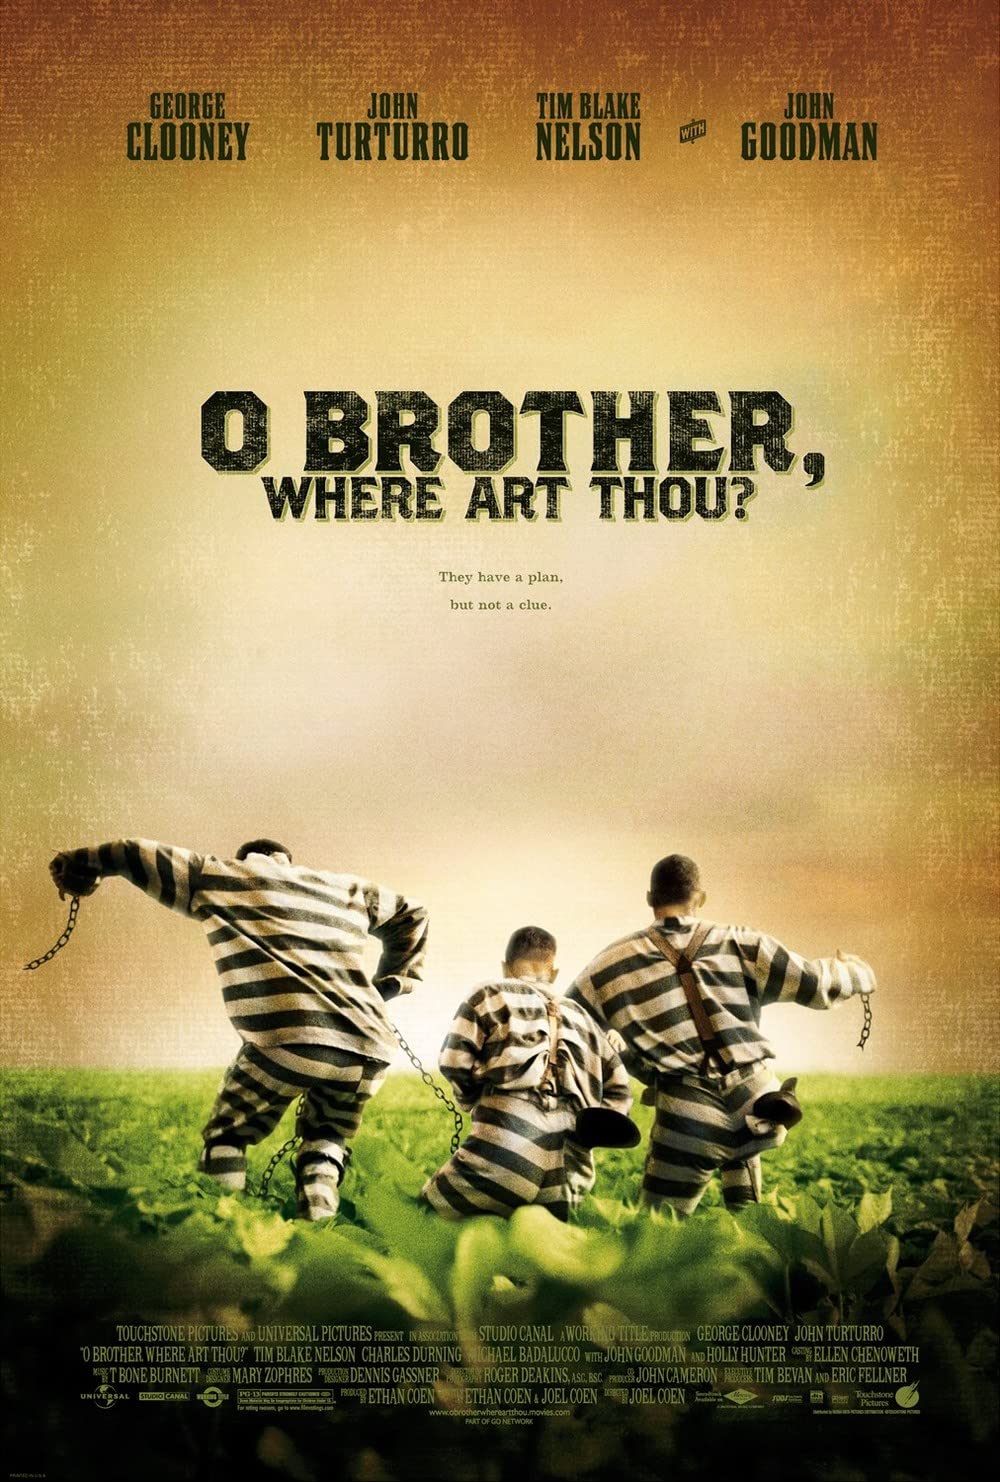 Filmbeschreibung zu O Brother, Where Art Thou?